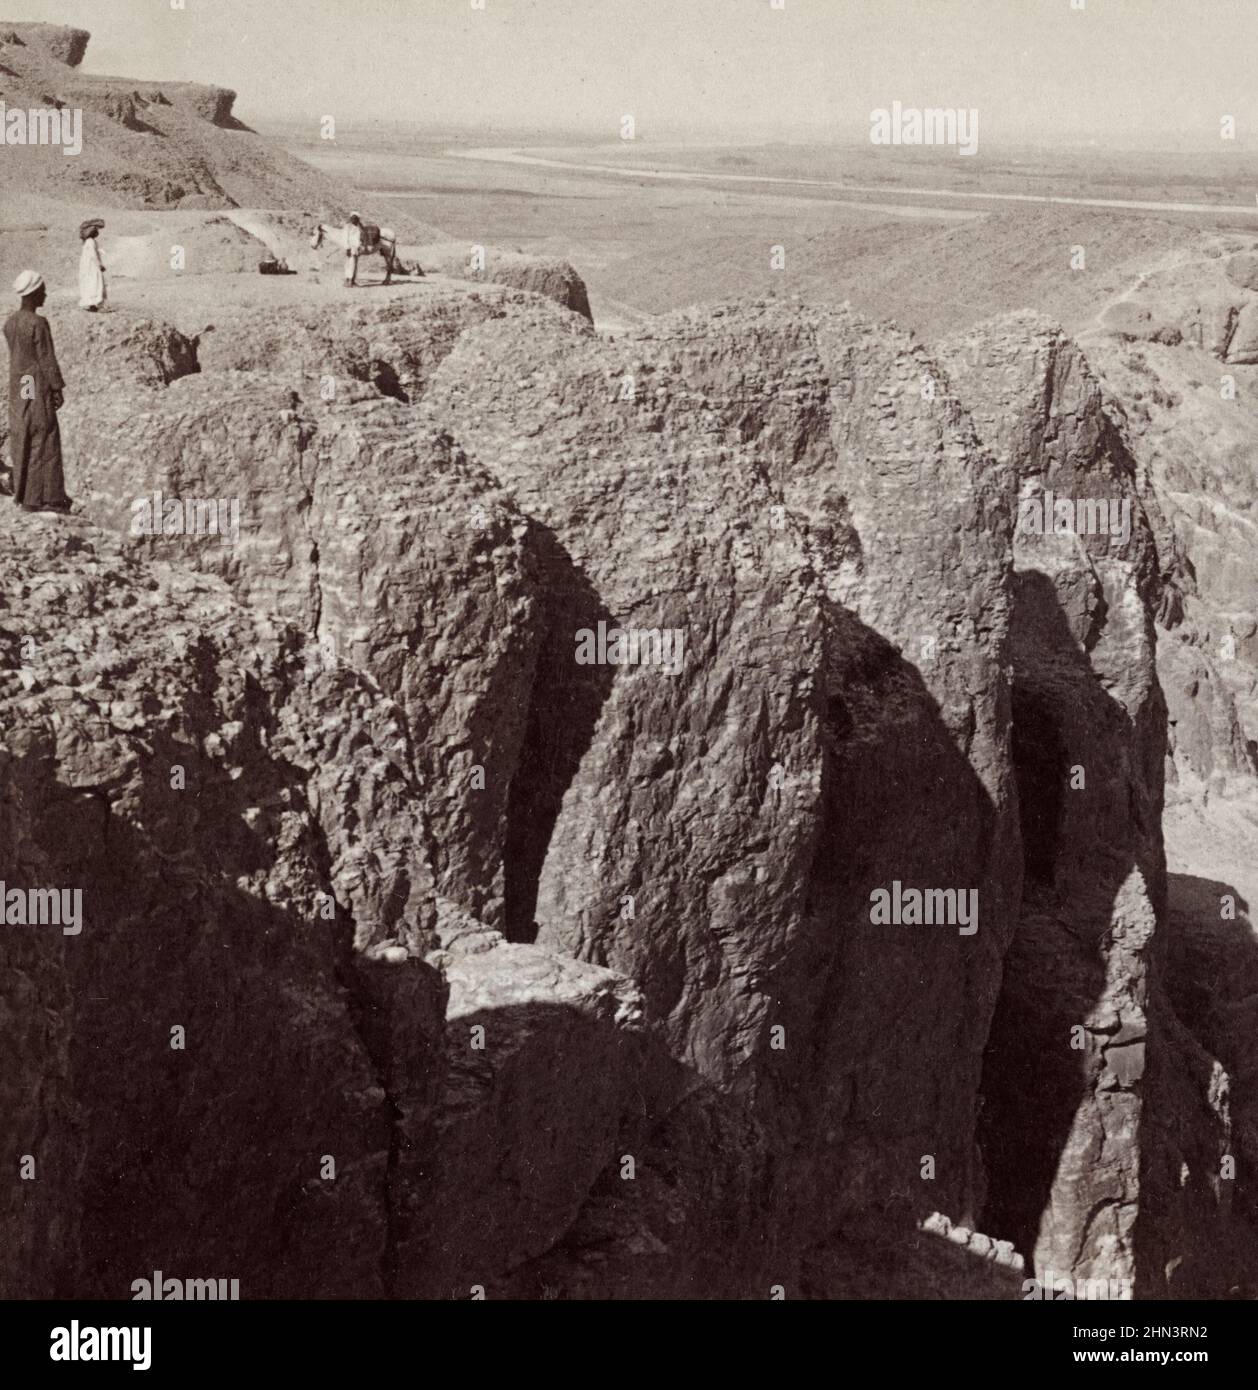 Foto vintage del viaje del Nilo (noreste), a través de los acantilados occidentales de Tebas, Egipto. 1904 Foto de stock